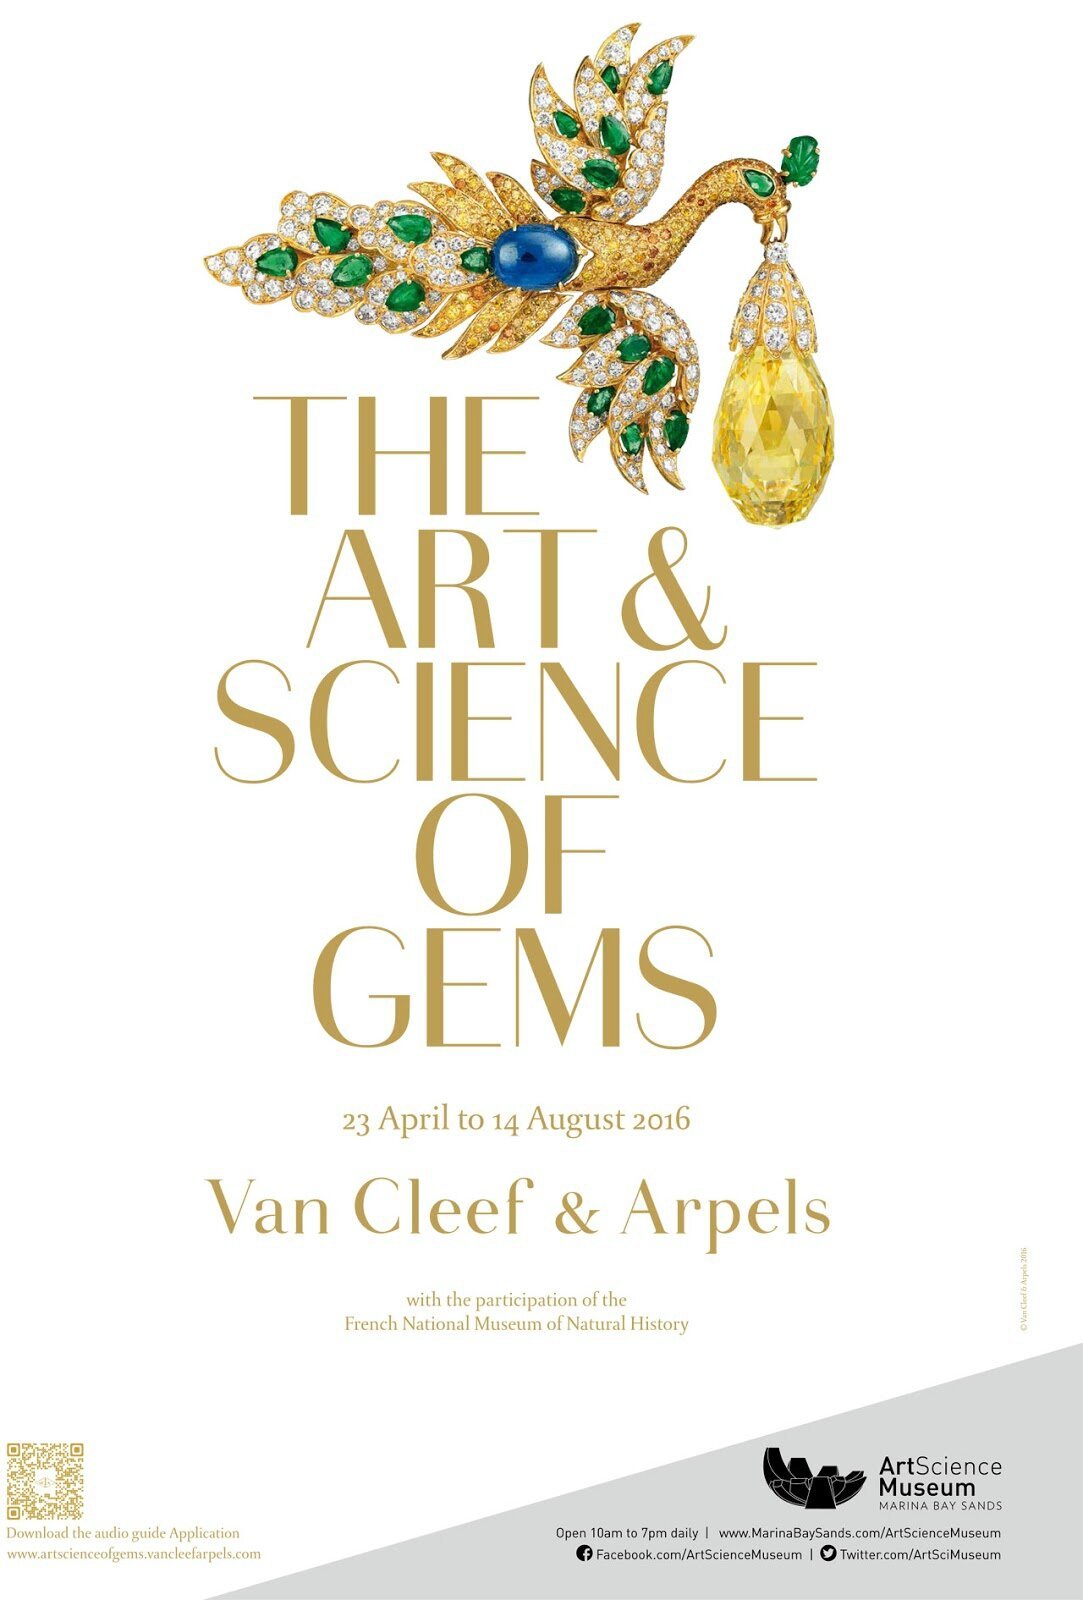 Token of Love - The Heritage Gallery - Van Cleef & Arpels